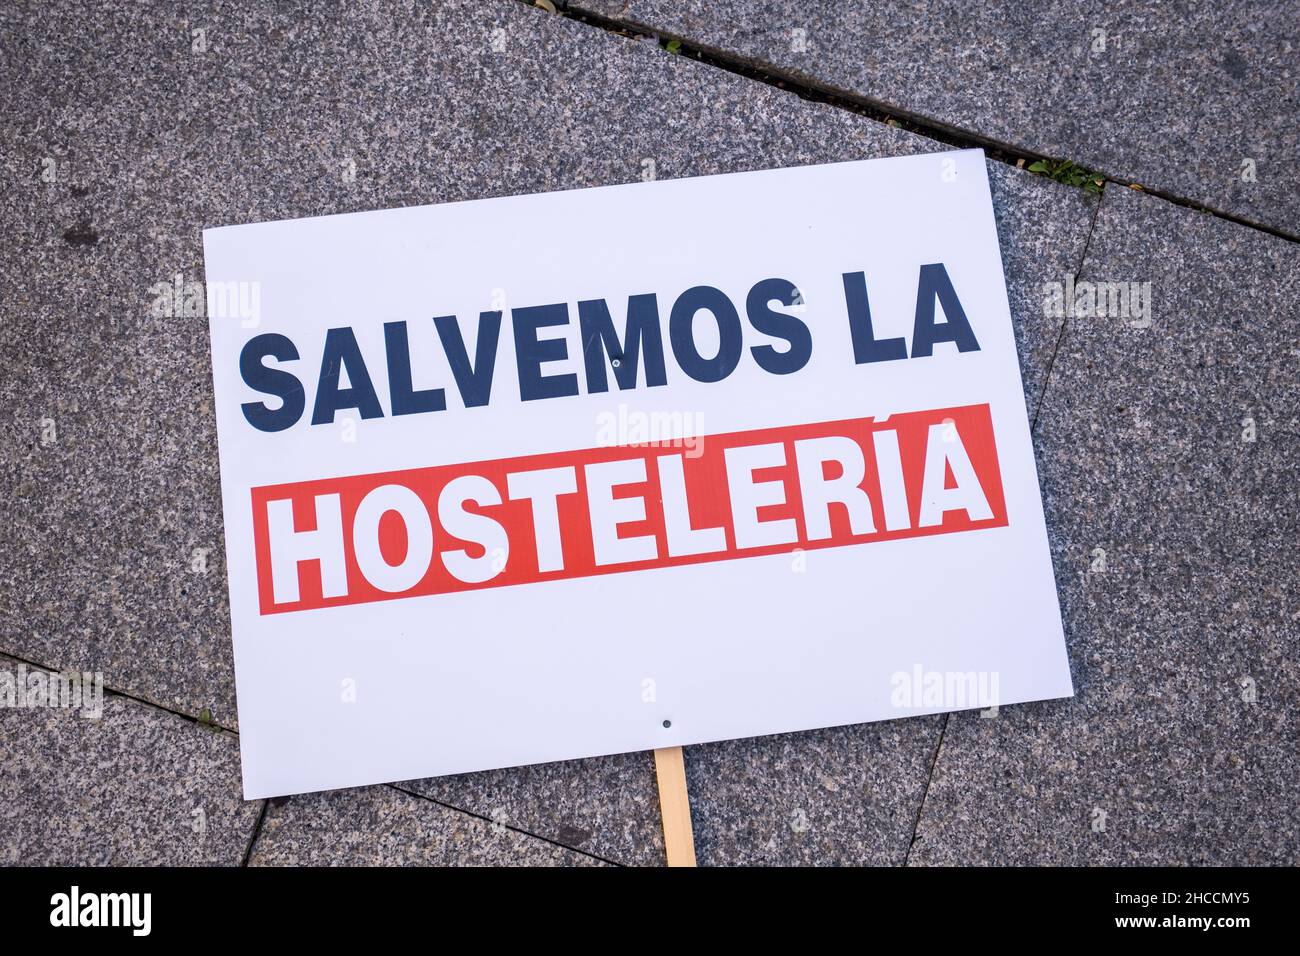 Valencia, Spagna; 21 gennaio 2021: "Salva l'osteria" sul terreno durante una dimostrazione da parte del settore alberghiero. Foto Stock